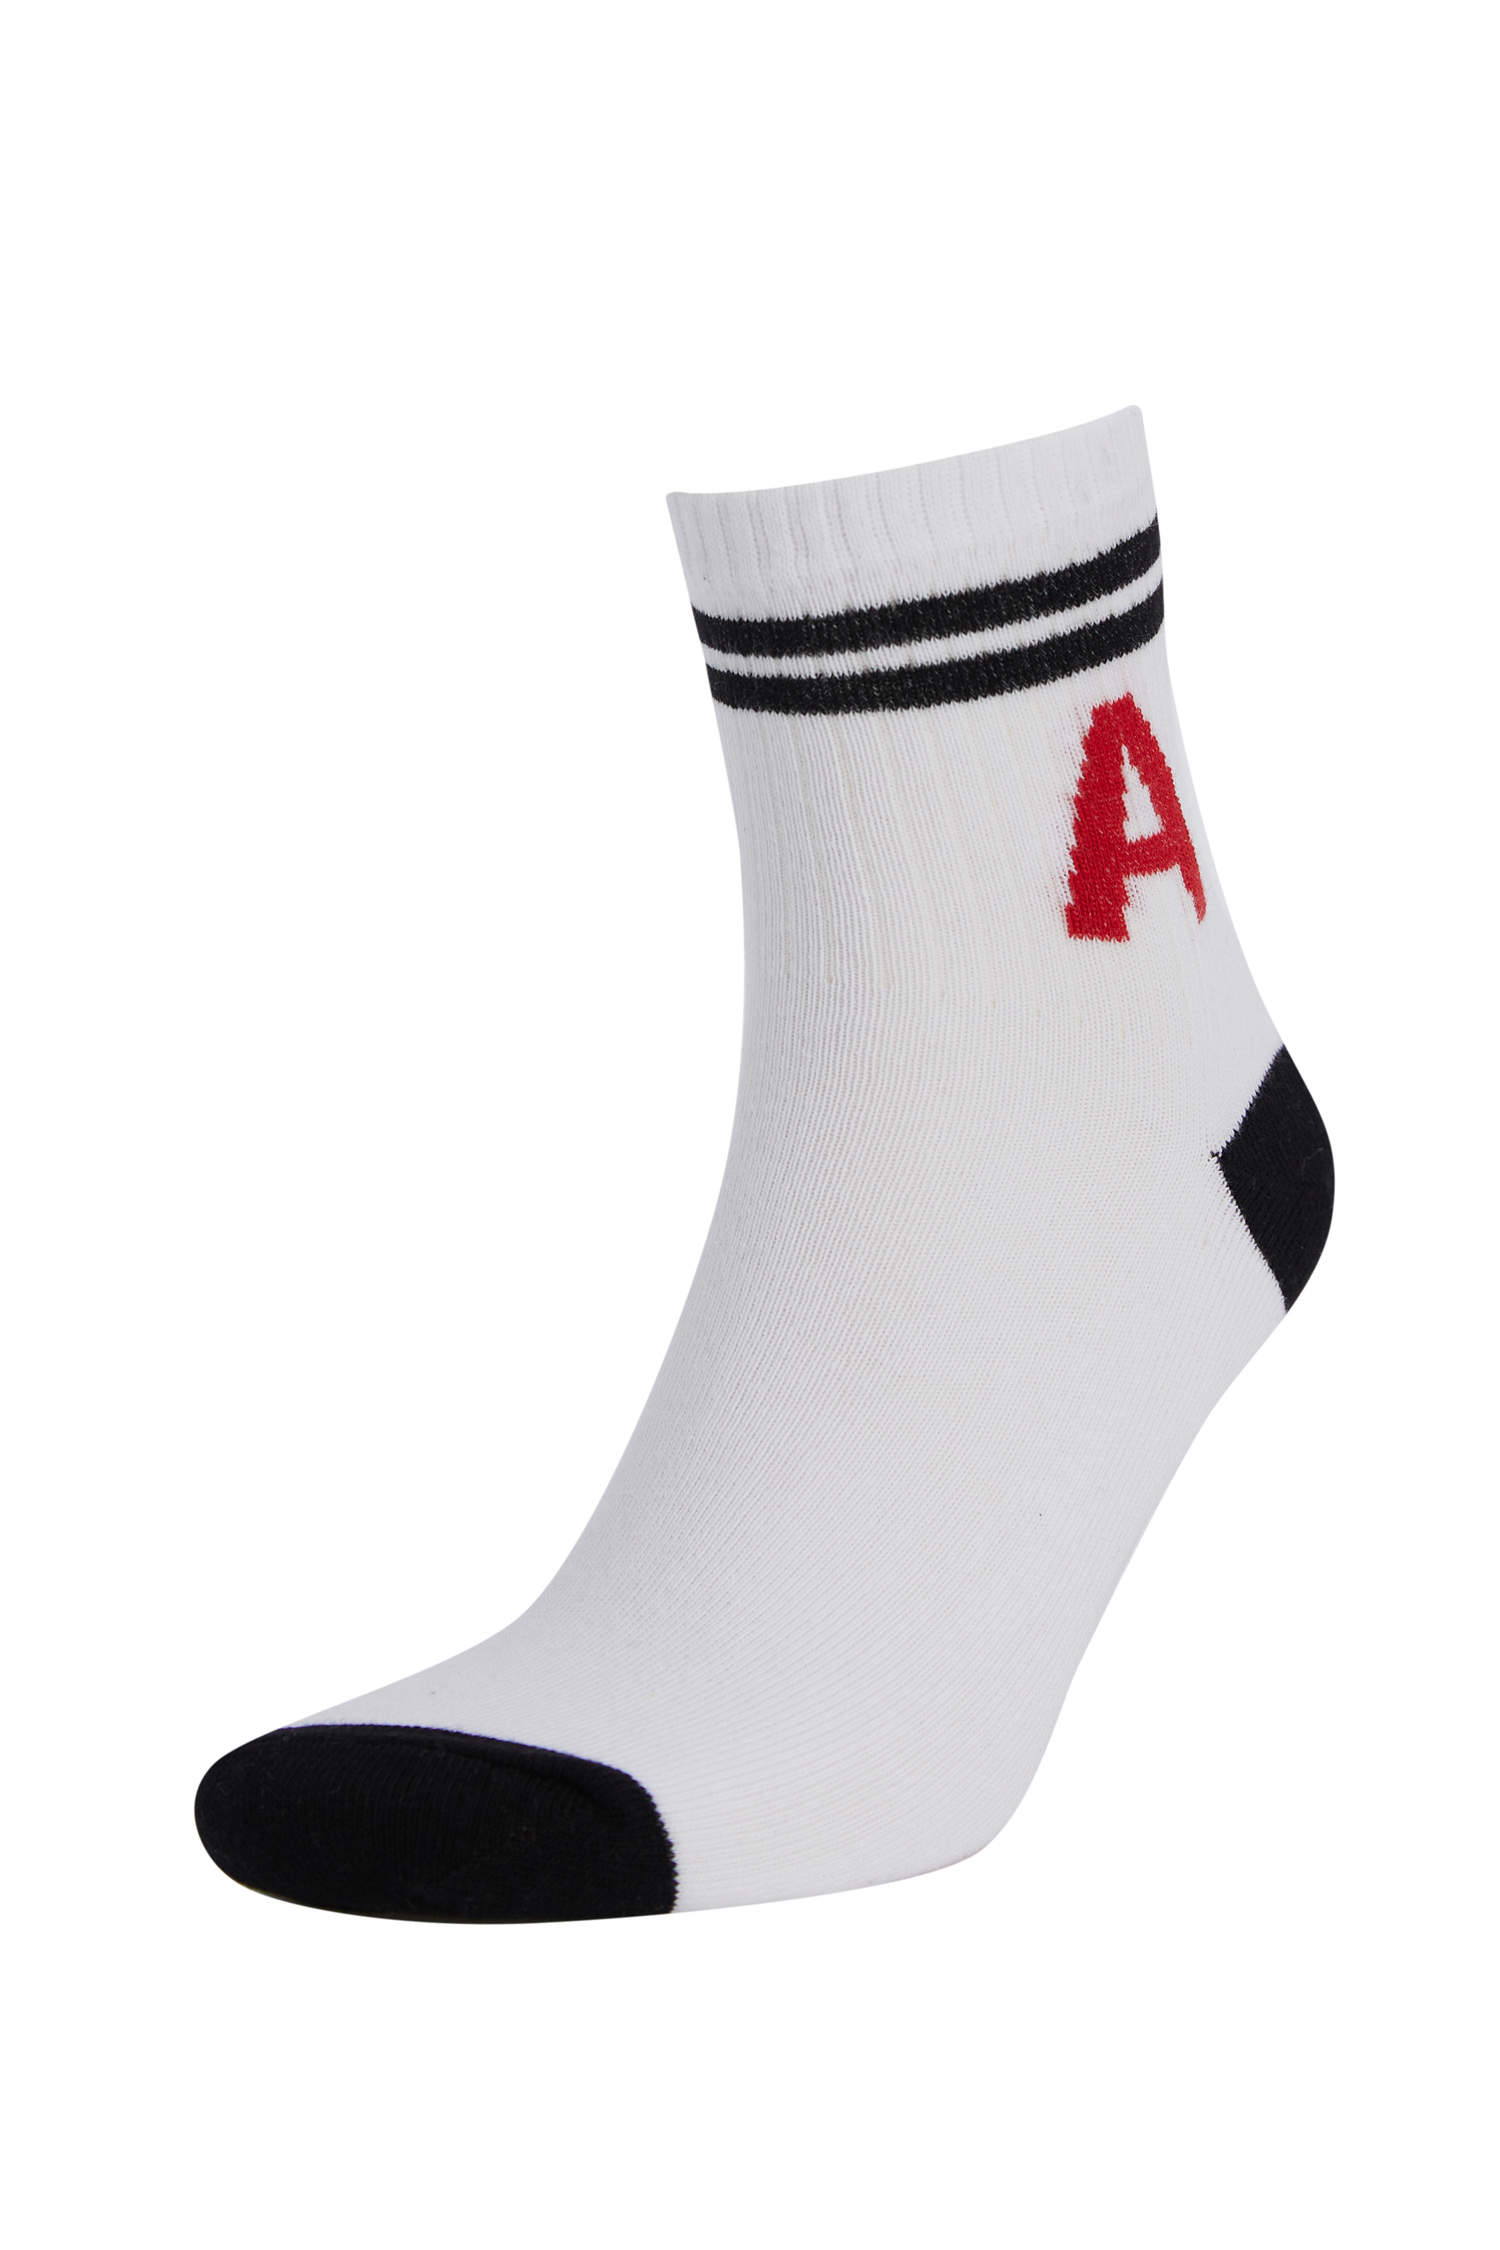 Defacto Harf İşlemeli 3'lü Soket Tenis Çorabı. 5